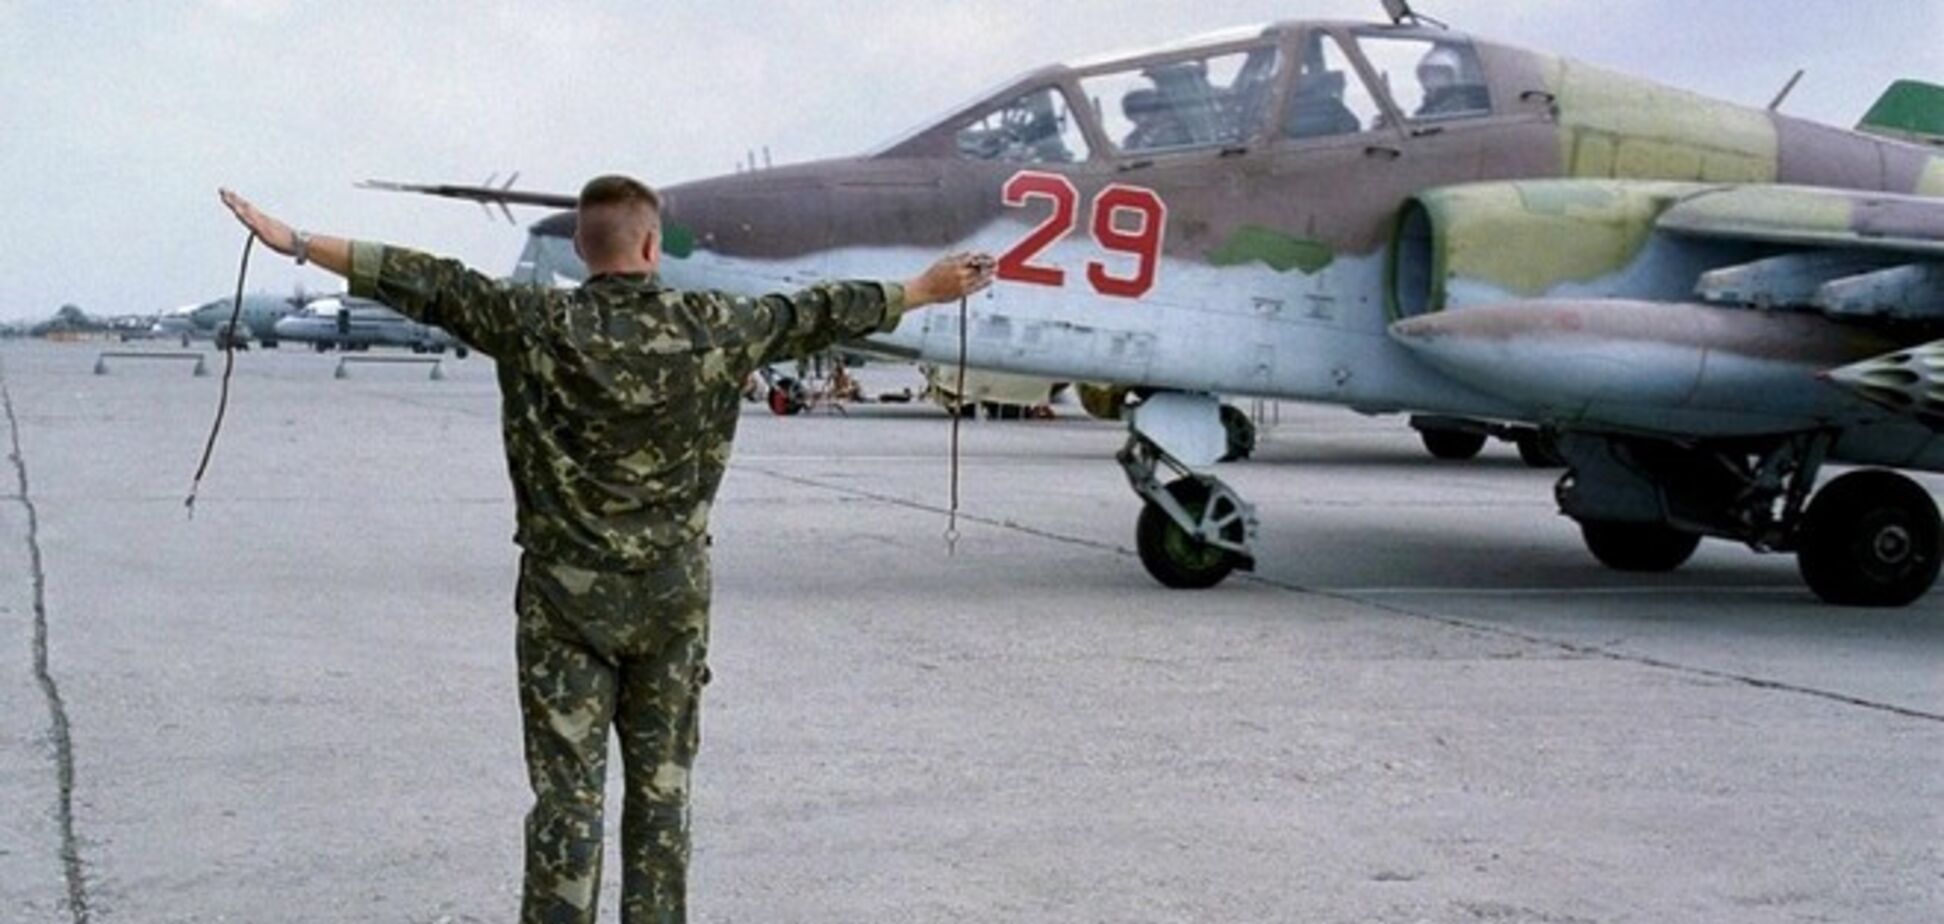 Европа изучит опасность российских военных самолетов для пассажирской авиации